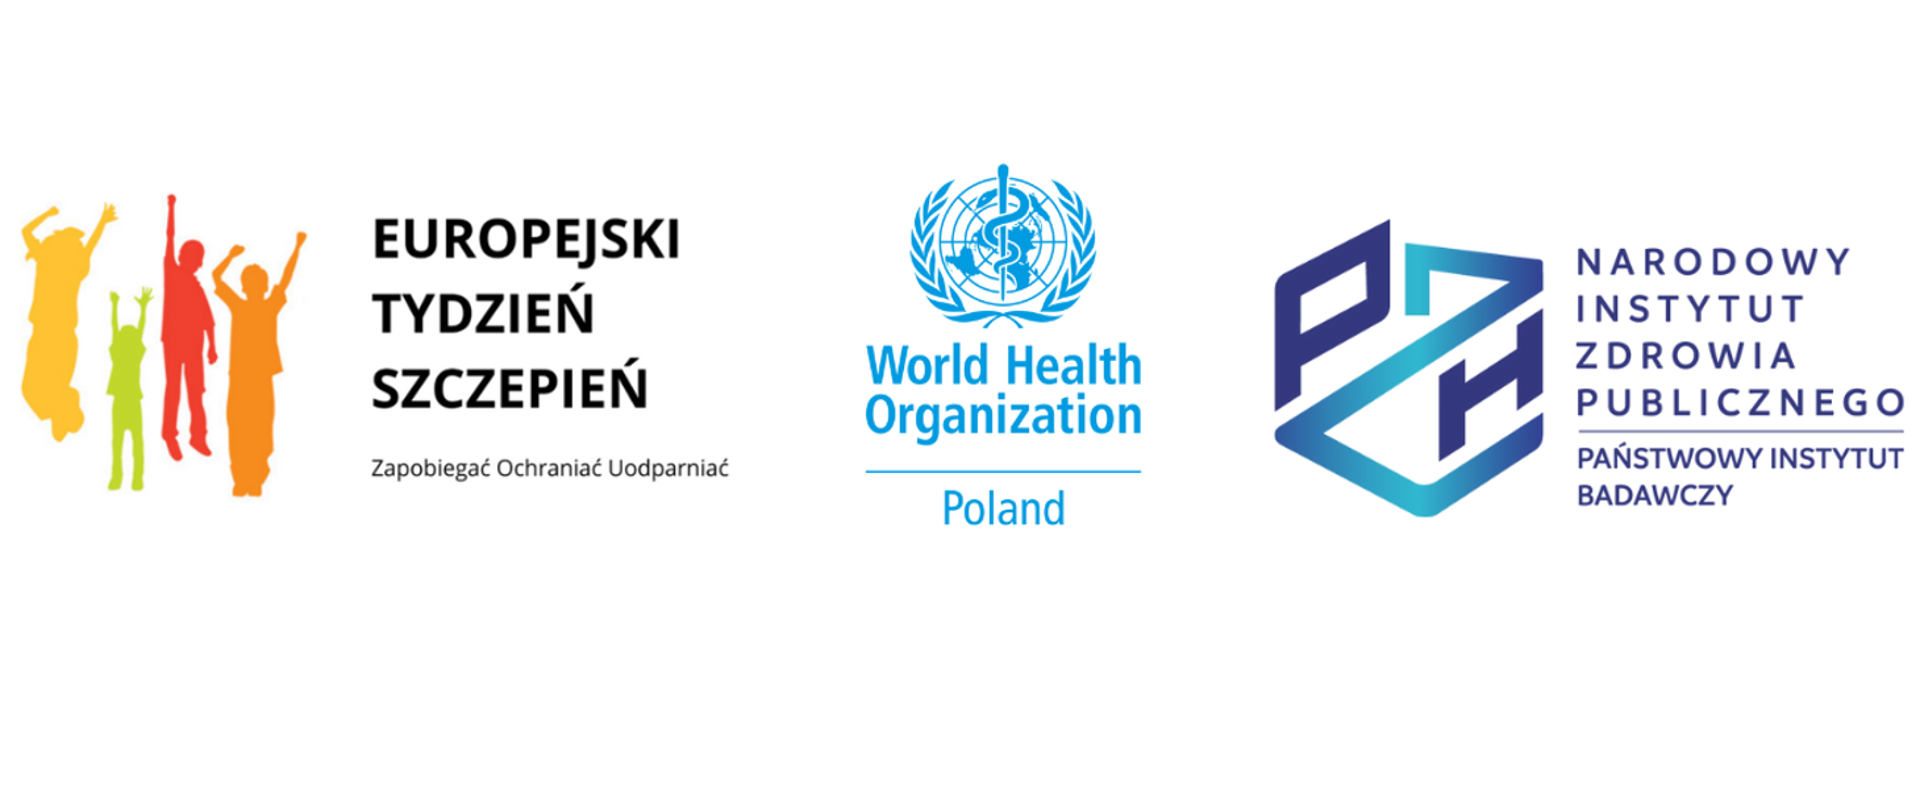 Logo z osobami z uniesionymi rękami napis Europejski Tydzień Szczepień logo WHO i Narodowego Instytutu Zdrowia Publicznego